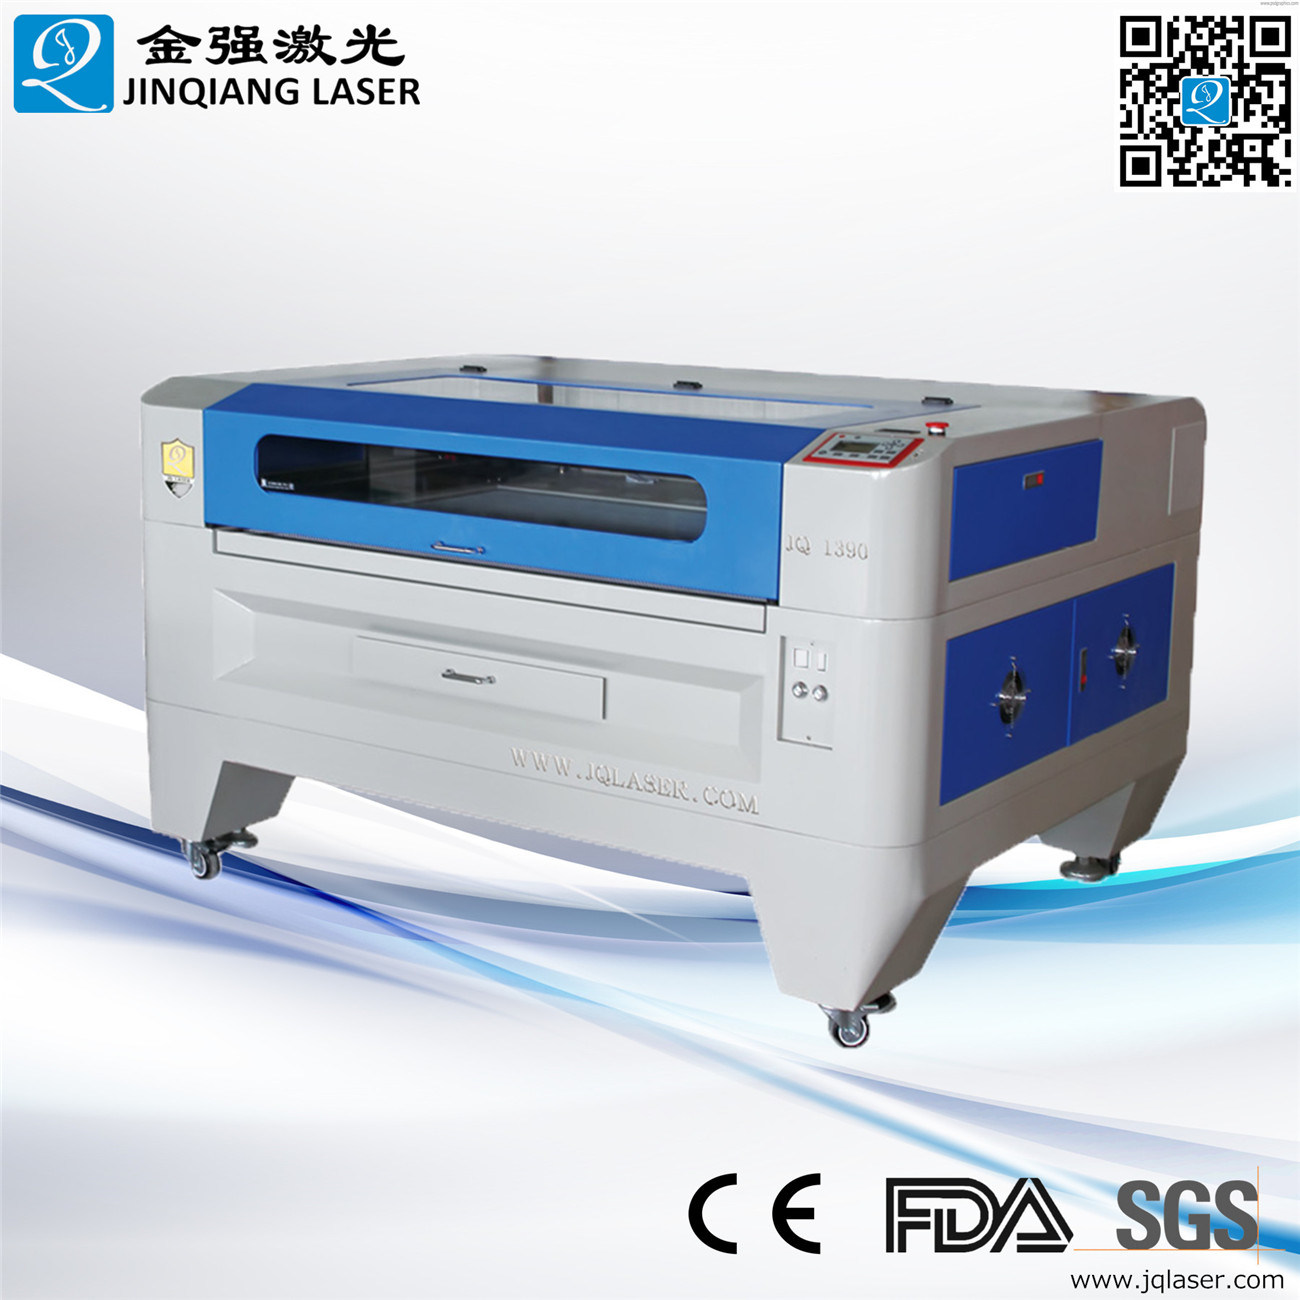 Jq1390 CO2 Laser Cutting Machine